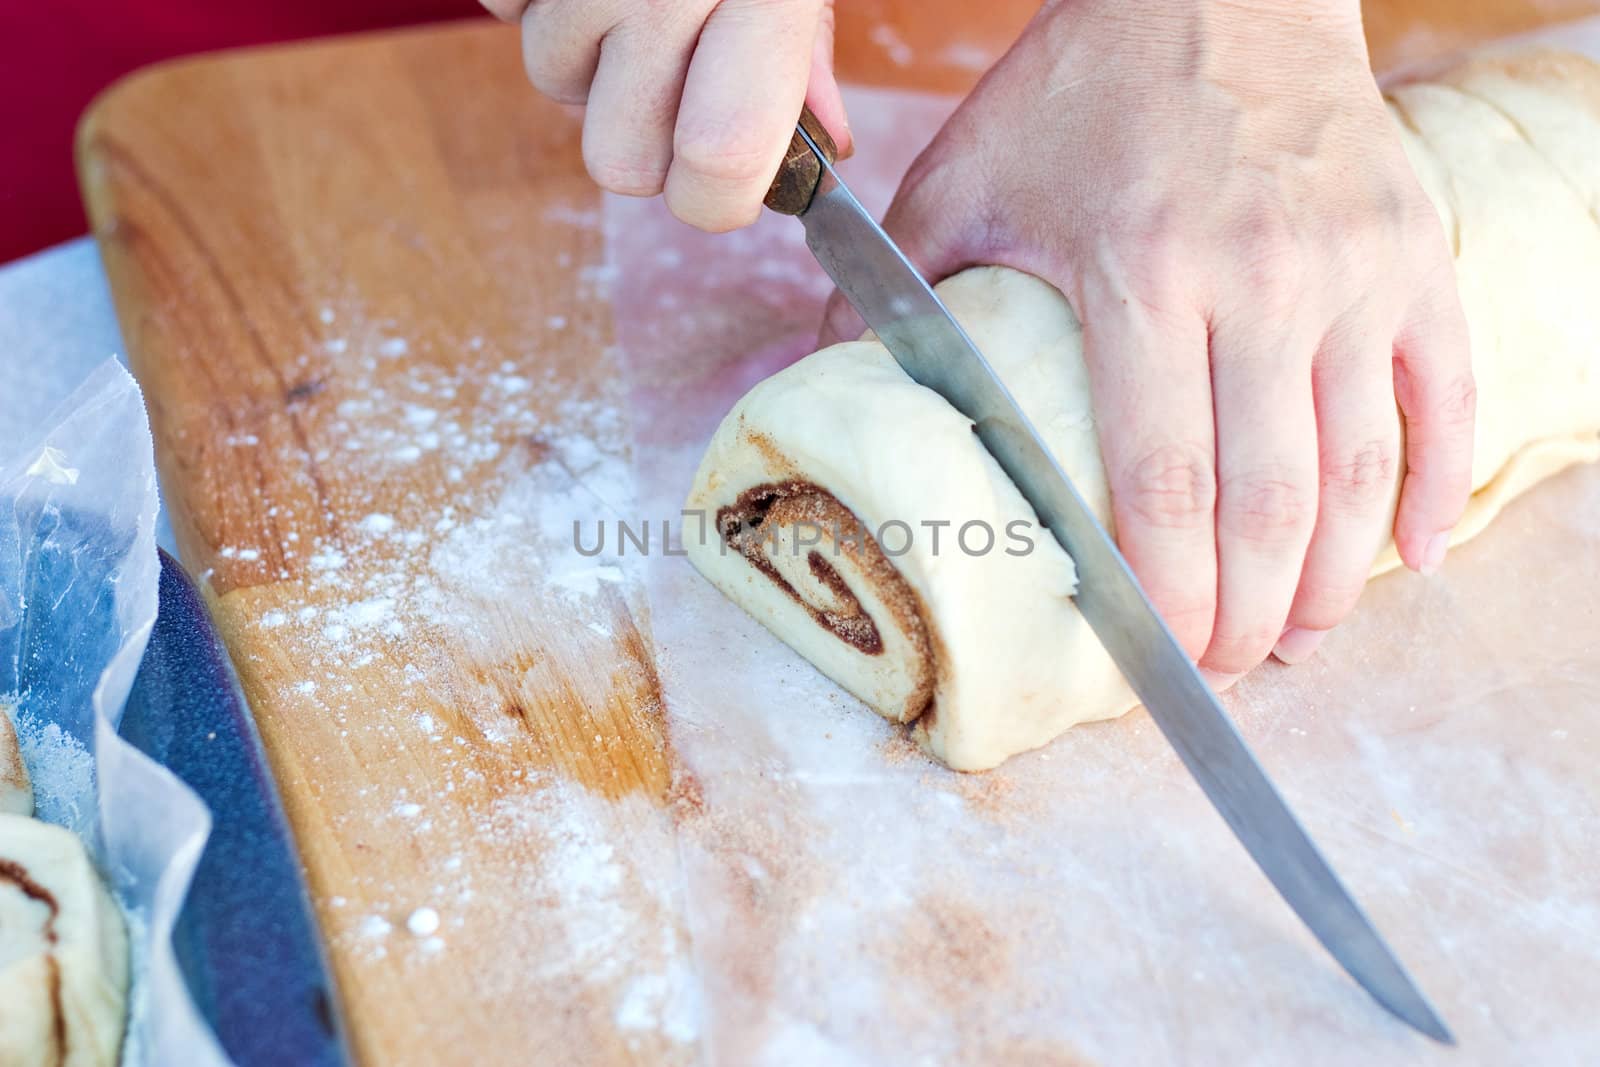 Cutting Cinnamon Roll Dough by StephanieFrey